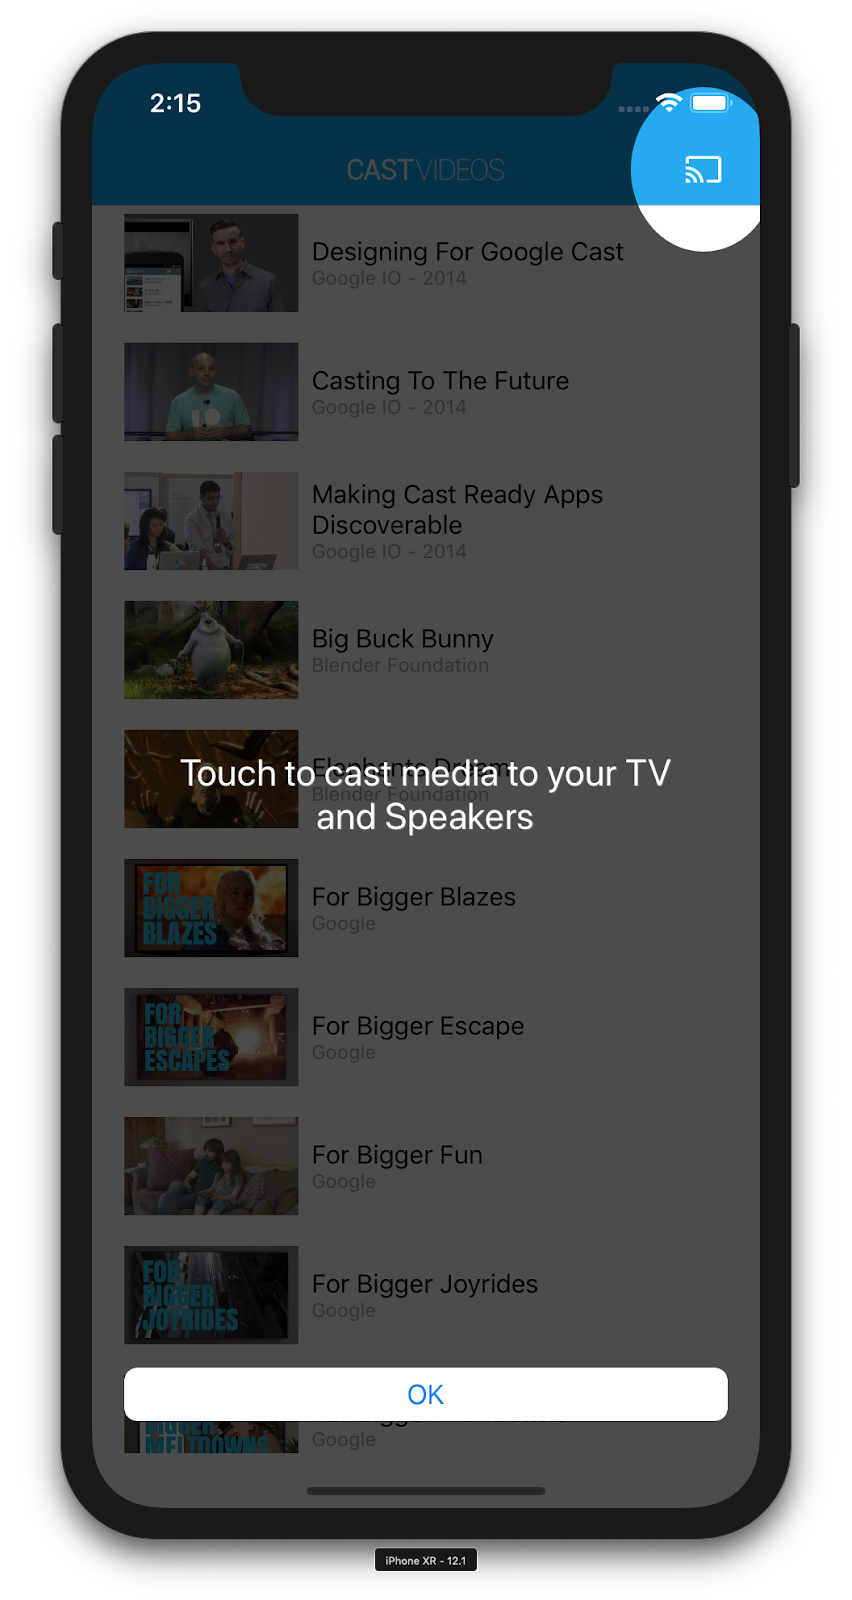 キャスト アイコンをオーバーレイ表示した CastVideos アプリを実行している iPhone のイラスト。キャスト アイコンがハイライト表示され、「タップしてメディアをテレビやスピーカーにキャストできます」というメッセージが表示されている